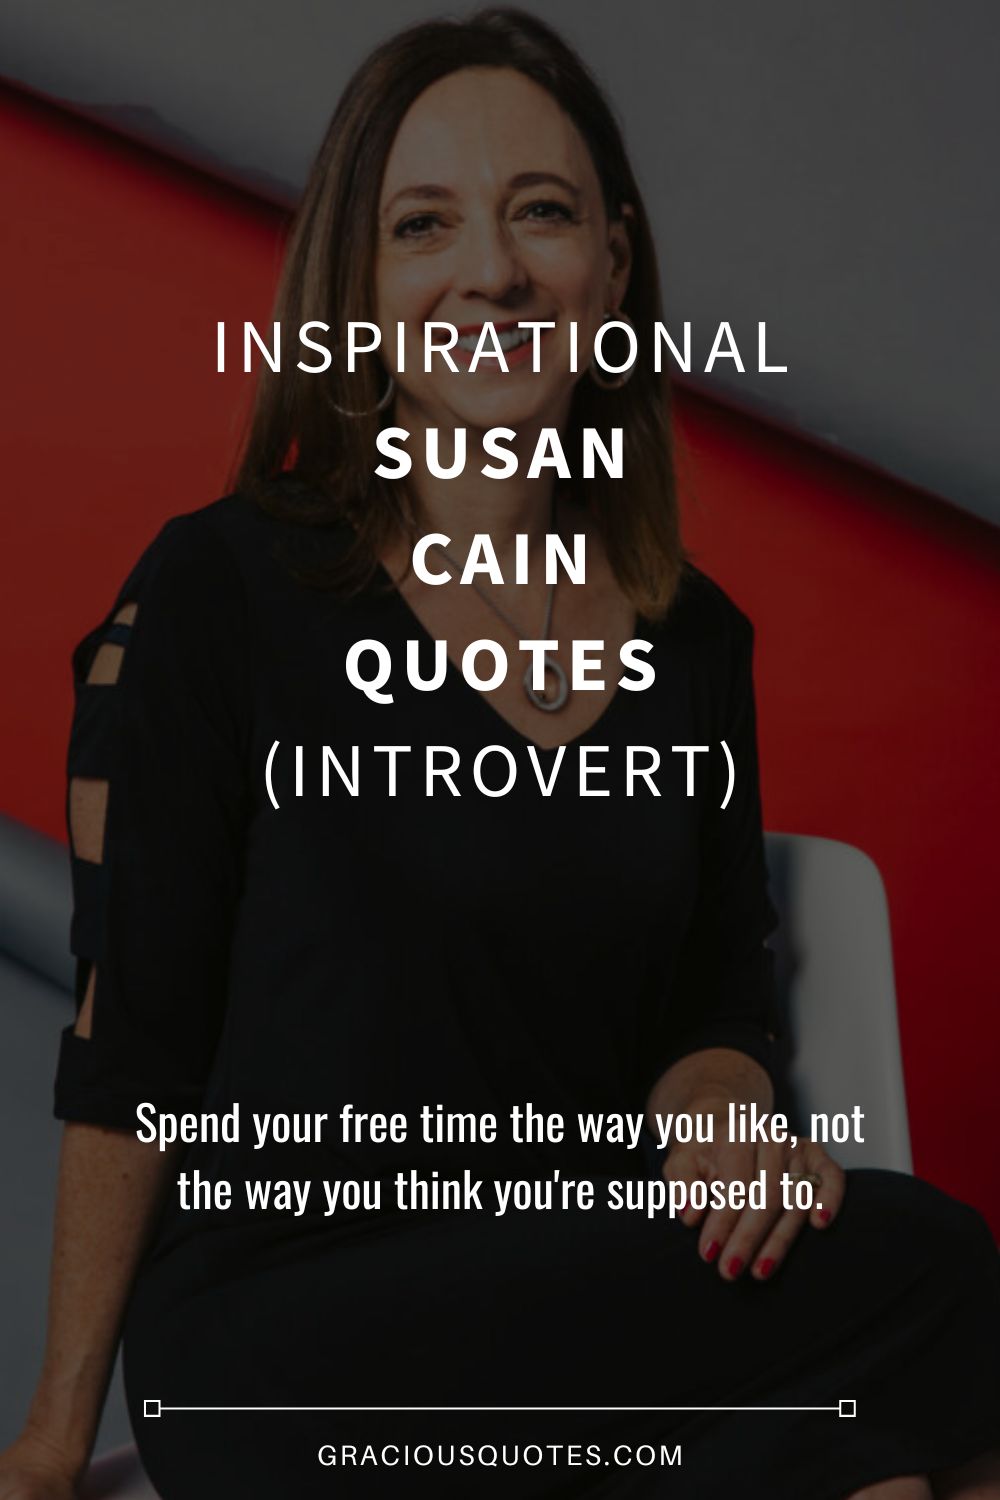 Inspirational Susan Cain Quotes (INTROVERT) - Gracious Quotes